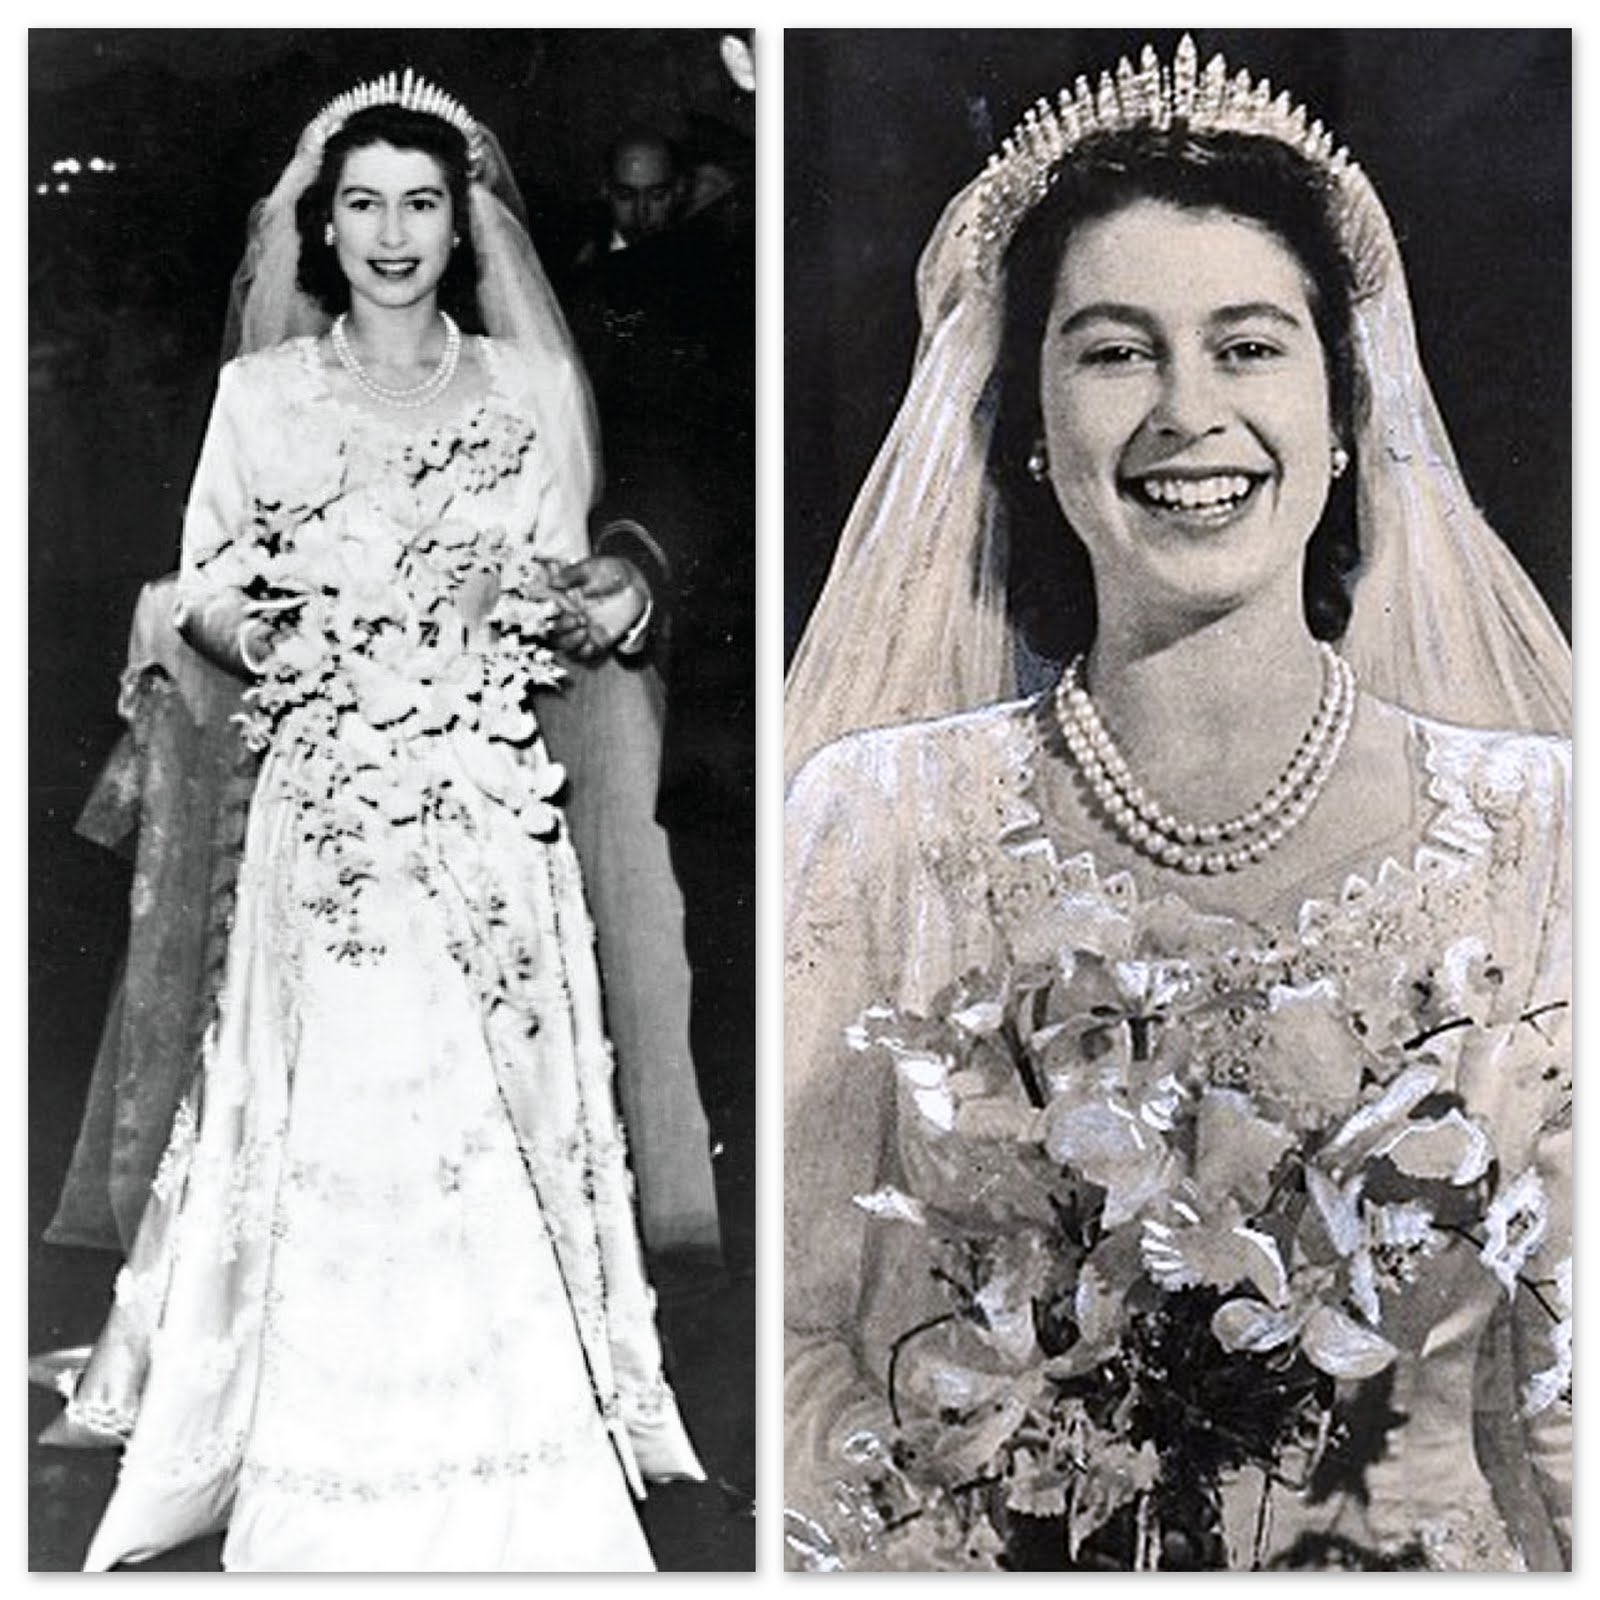 http://1.bp.blogspot.com/-b4r8vGm51Qc/UDc6zCCcUII/AAAAAAAAAKU/_aweeXd_mj8/s1600/Queen-Elizabeth-II-wedding-dress.jpg